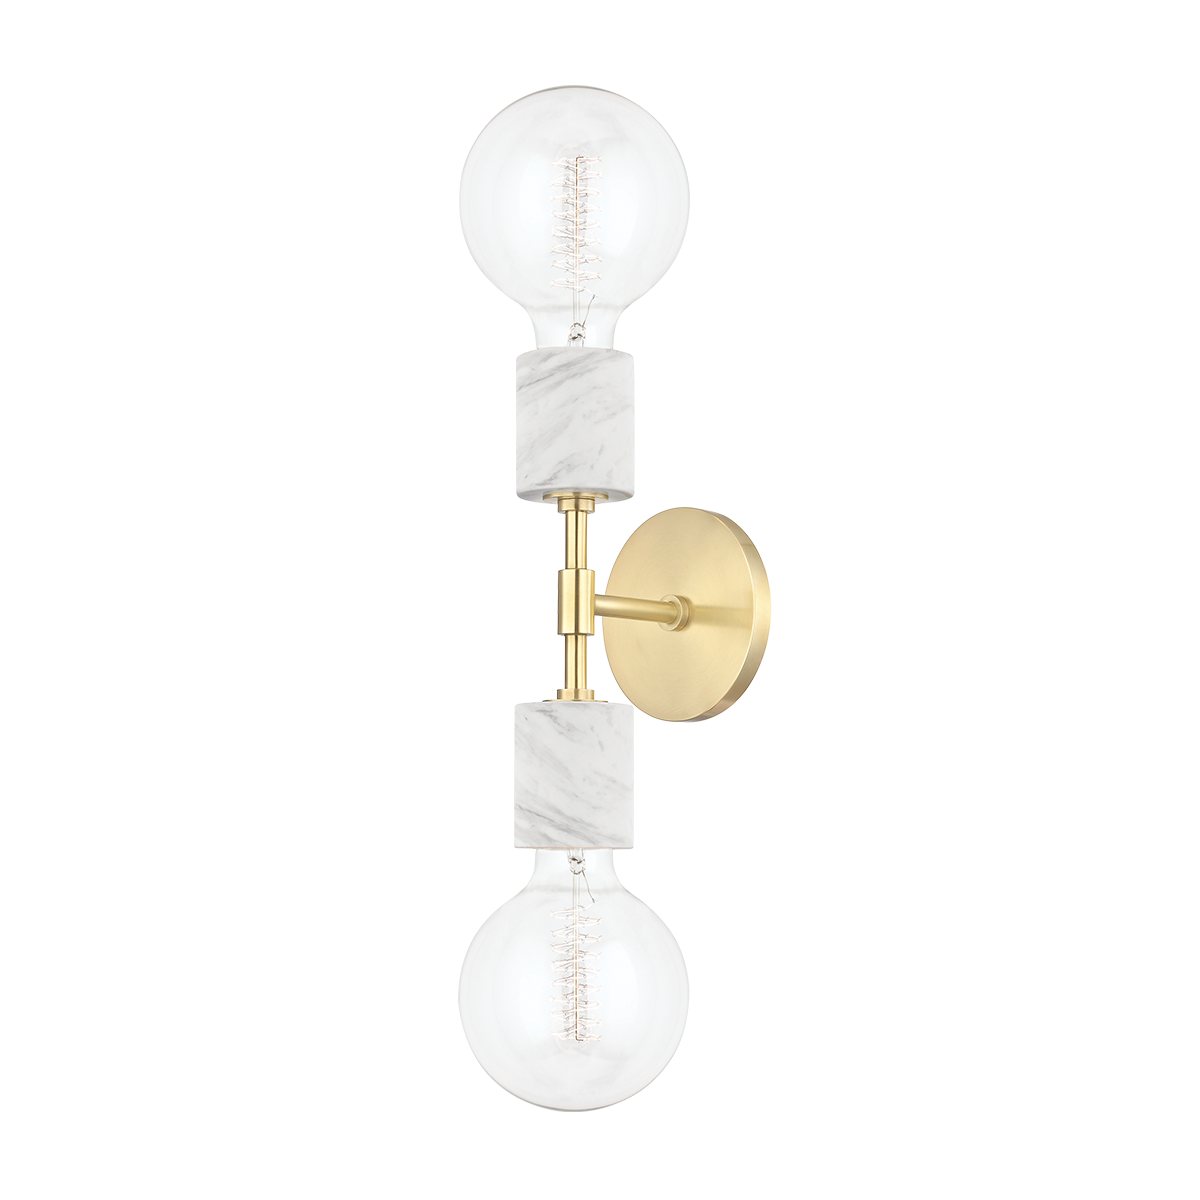 Hudson Valley Lighting Asime 2 Light Sconces H120102 Wall Light Fixtures Mitzi Aged Brass  